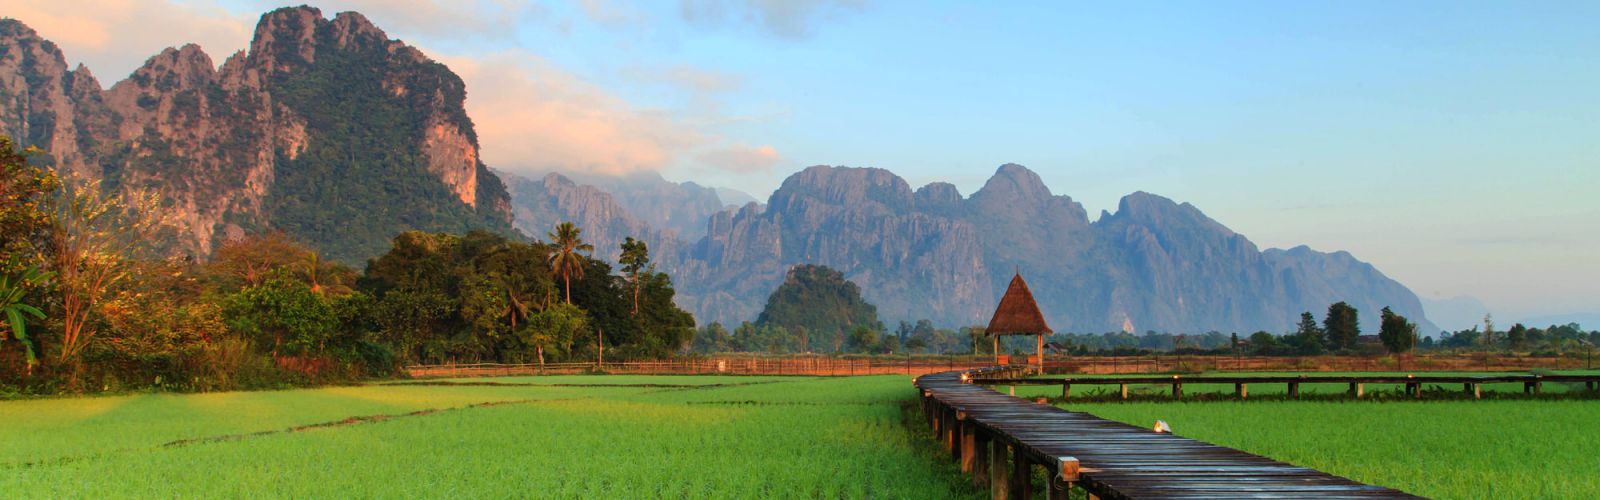 Vietnam - Laos